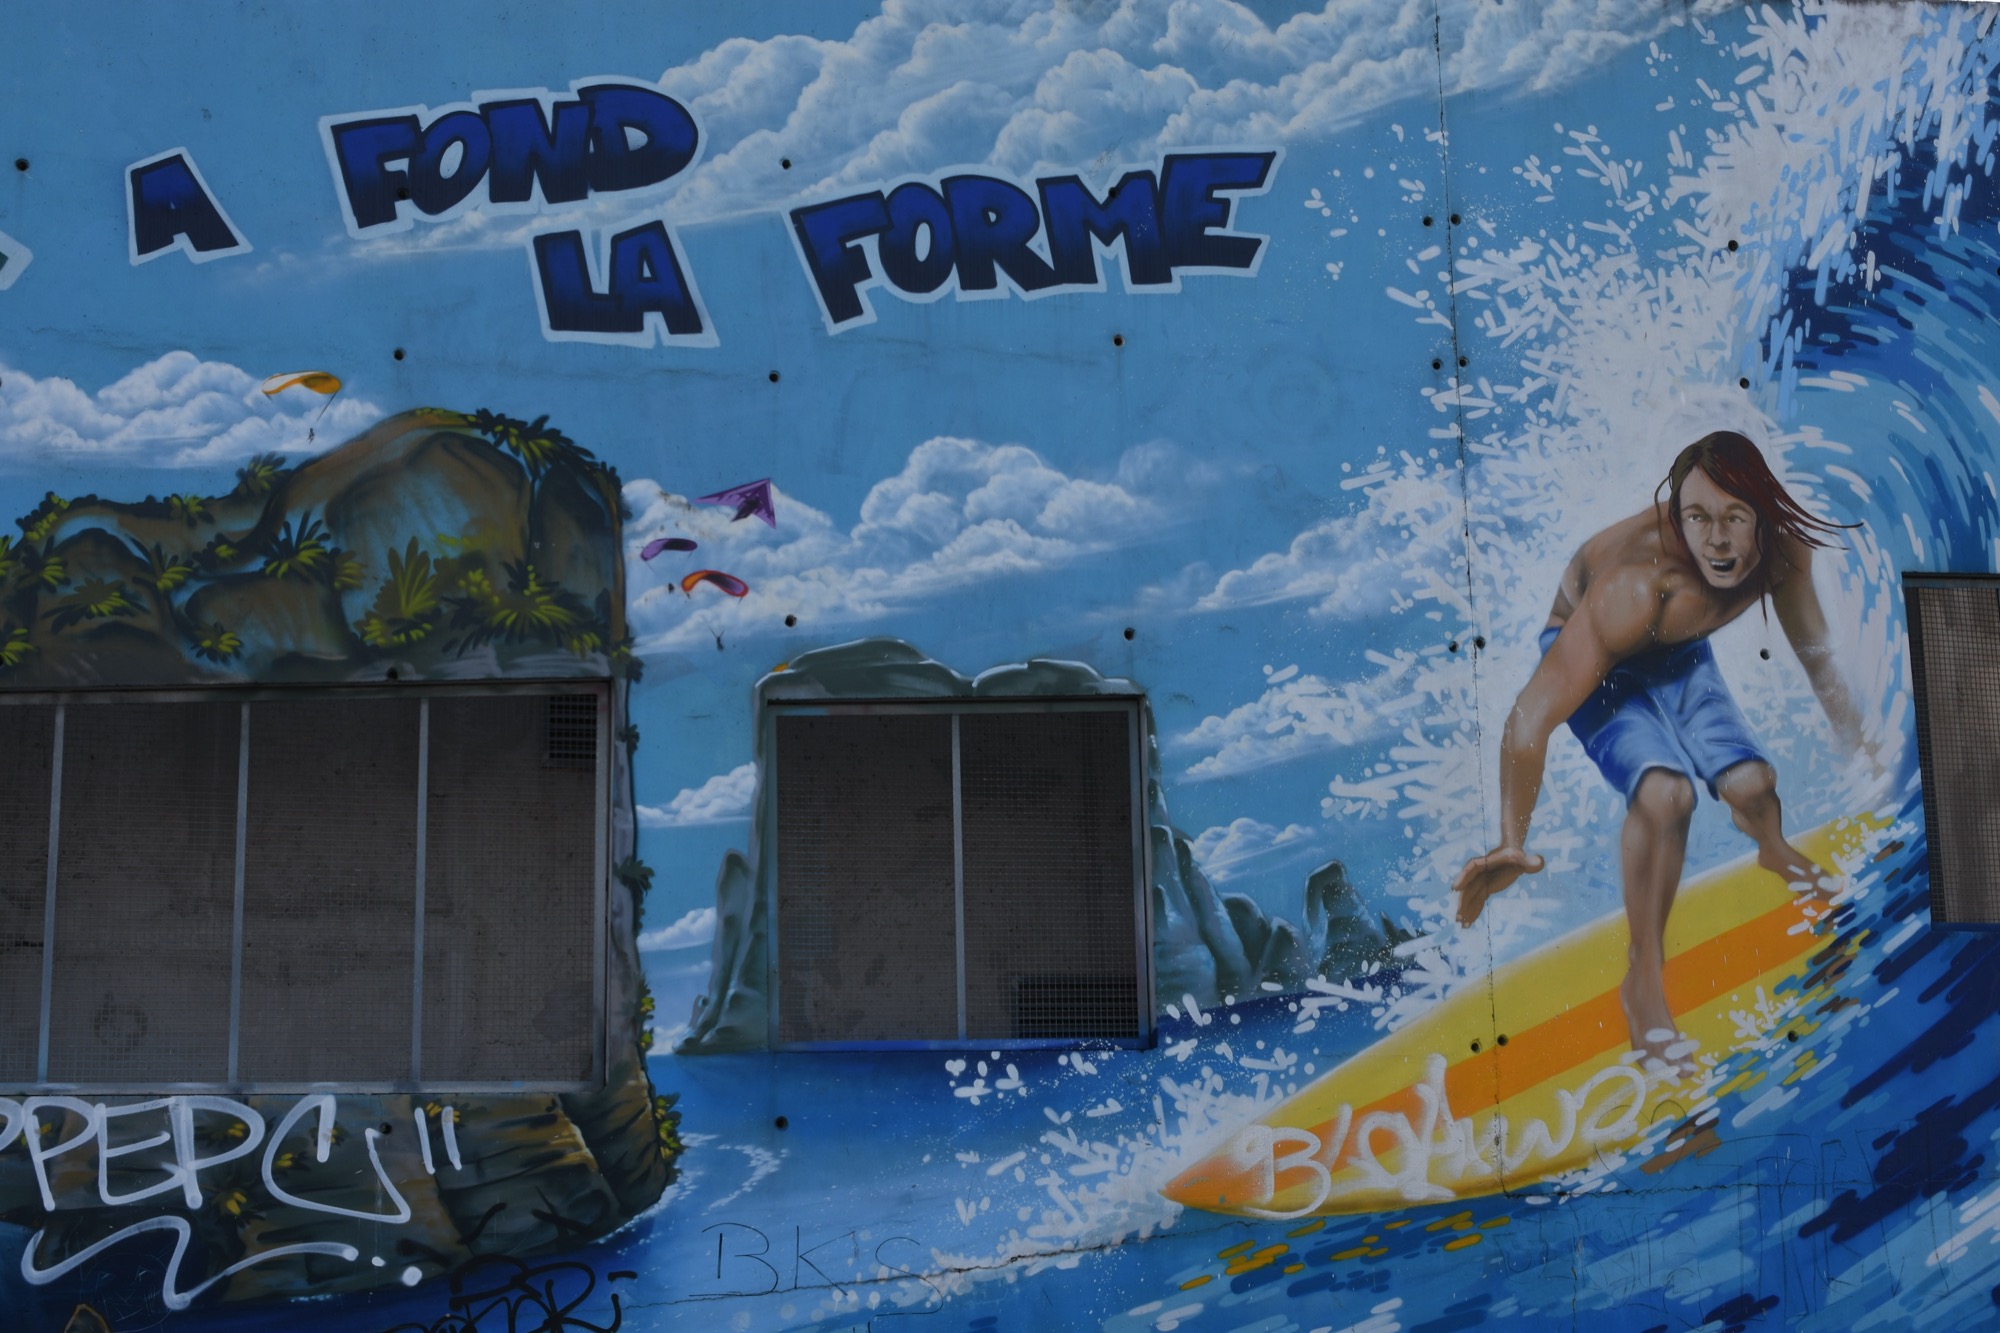 Graffiti 1165 A fond la forme quoâ !!! capturé par mrostf à Noisy-le-Sec France